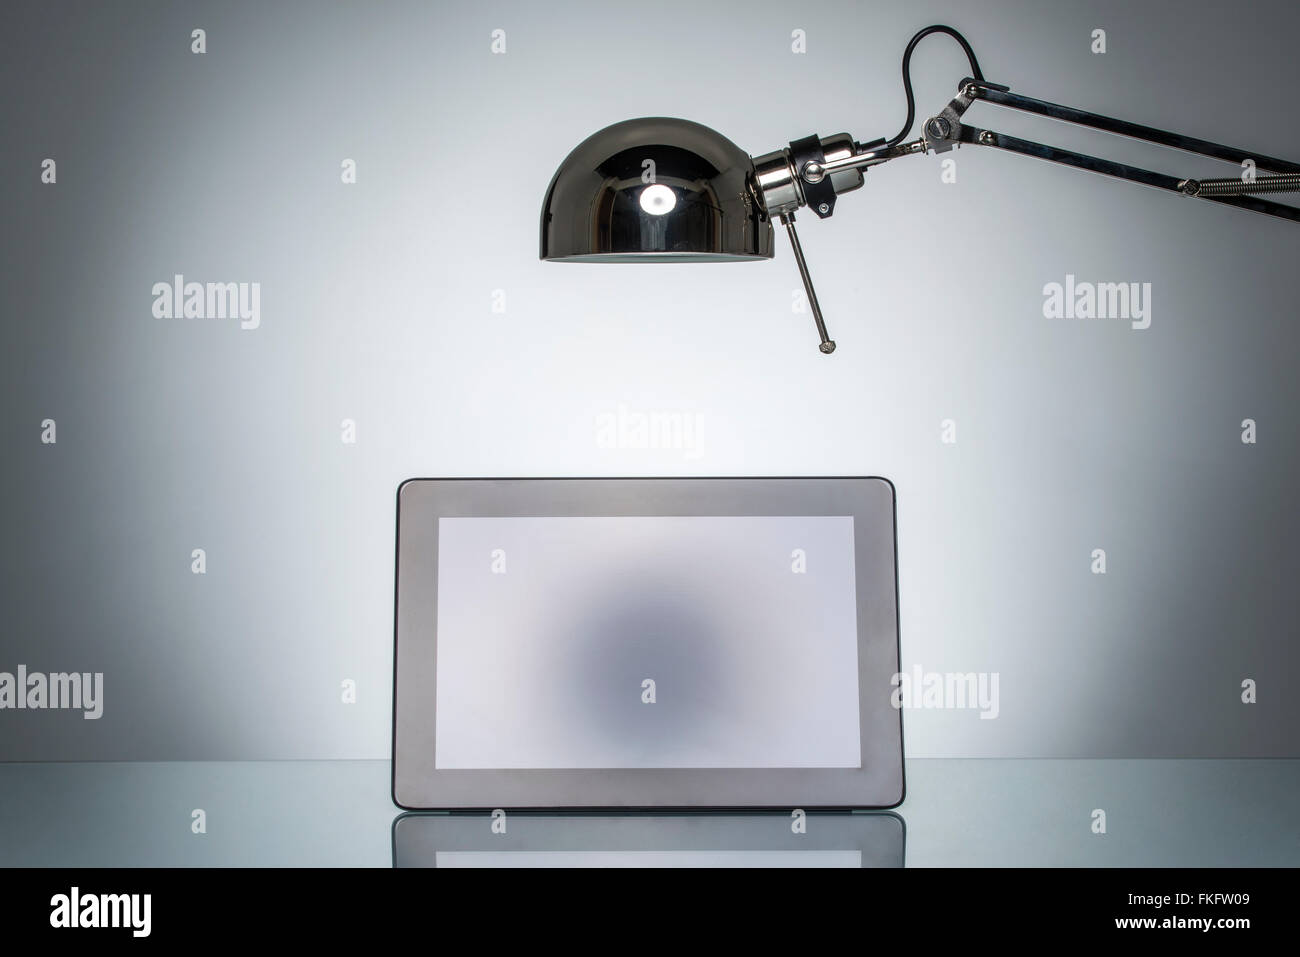 L'éclairage tablet touchpad remarque avec lampe ronde sur l'éclairage de studio Banque D'Images